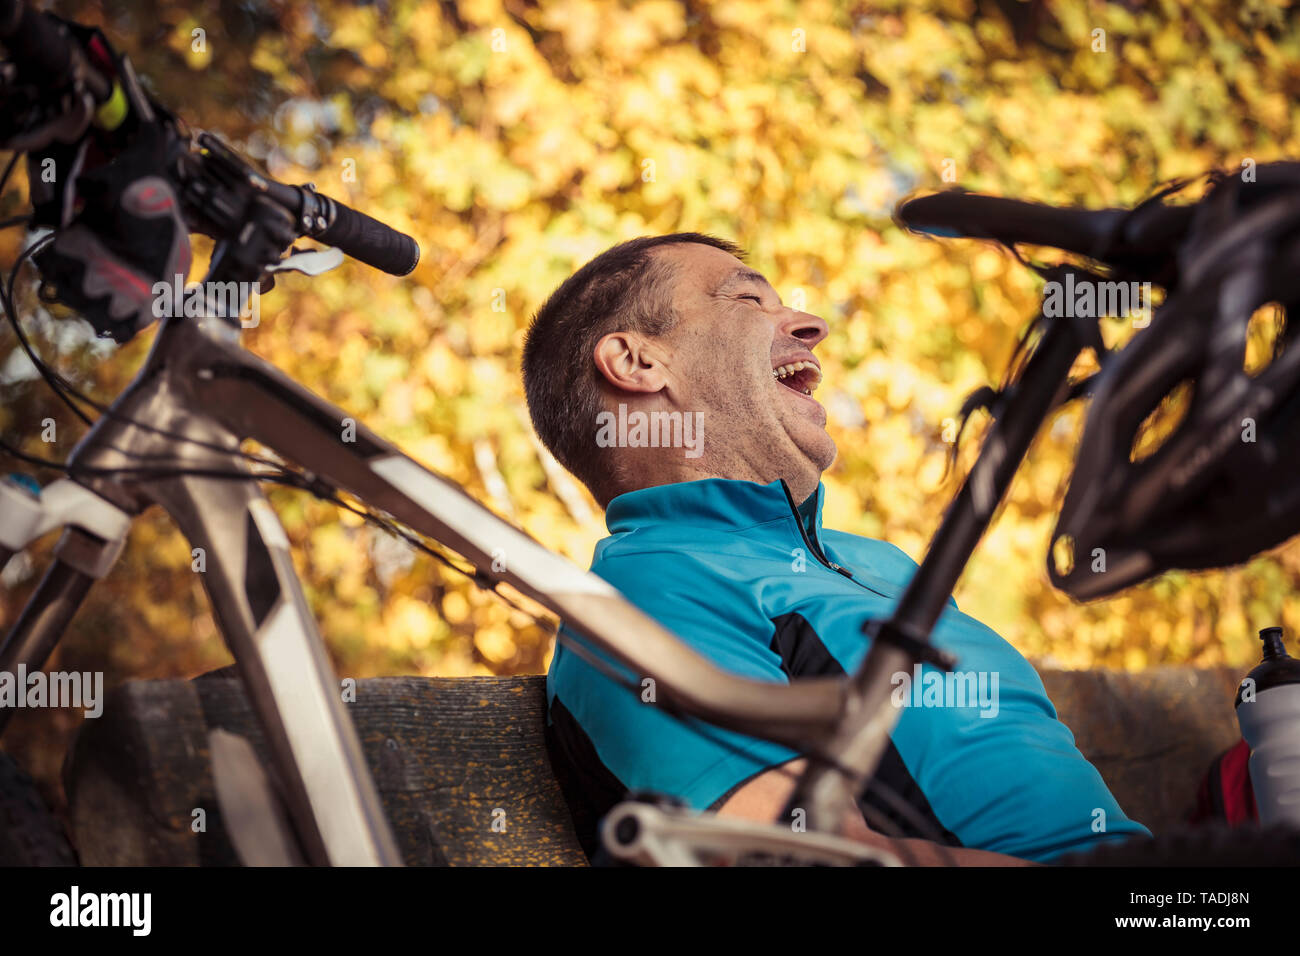 Laughing Man mit dem Mountainbike eine Pause auf einer Bank sitzen  Stockfotografie - Alamy